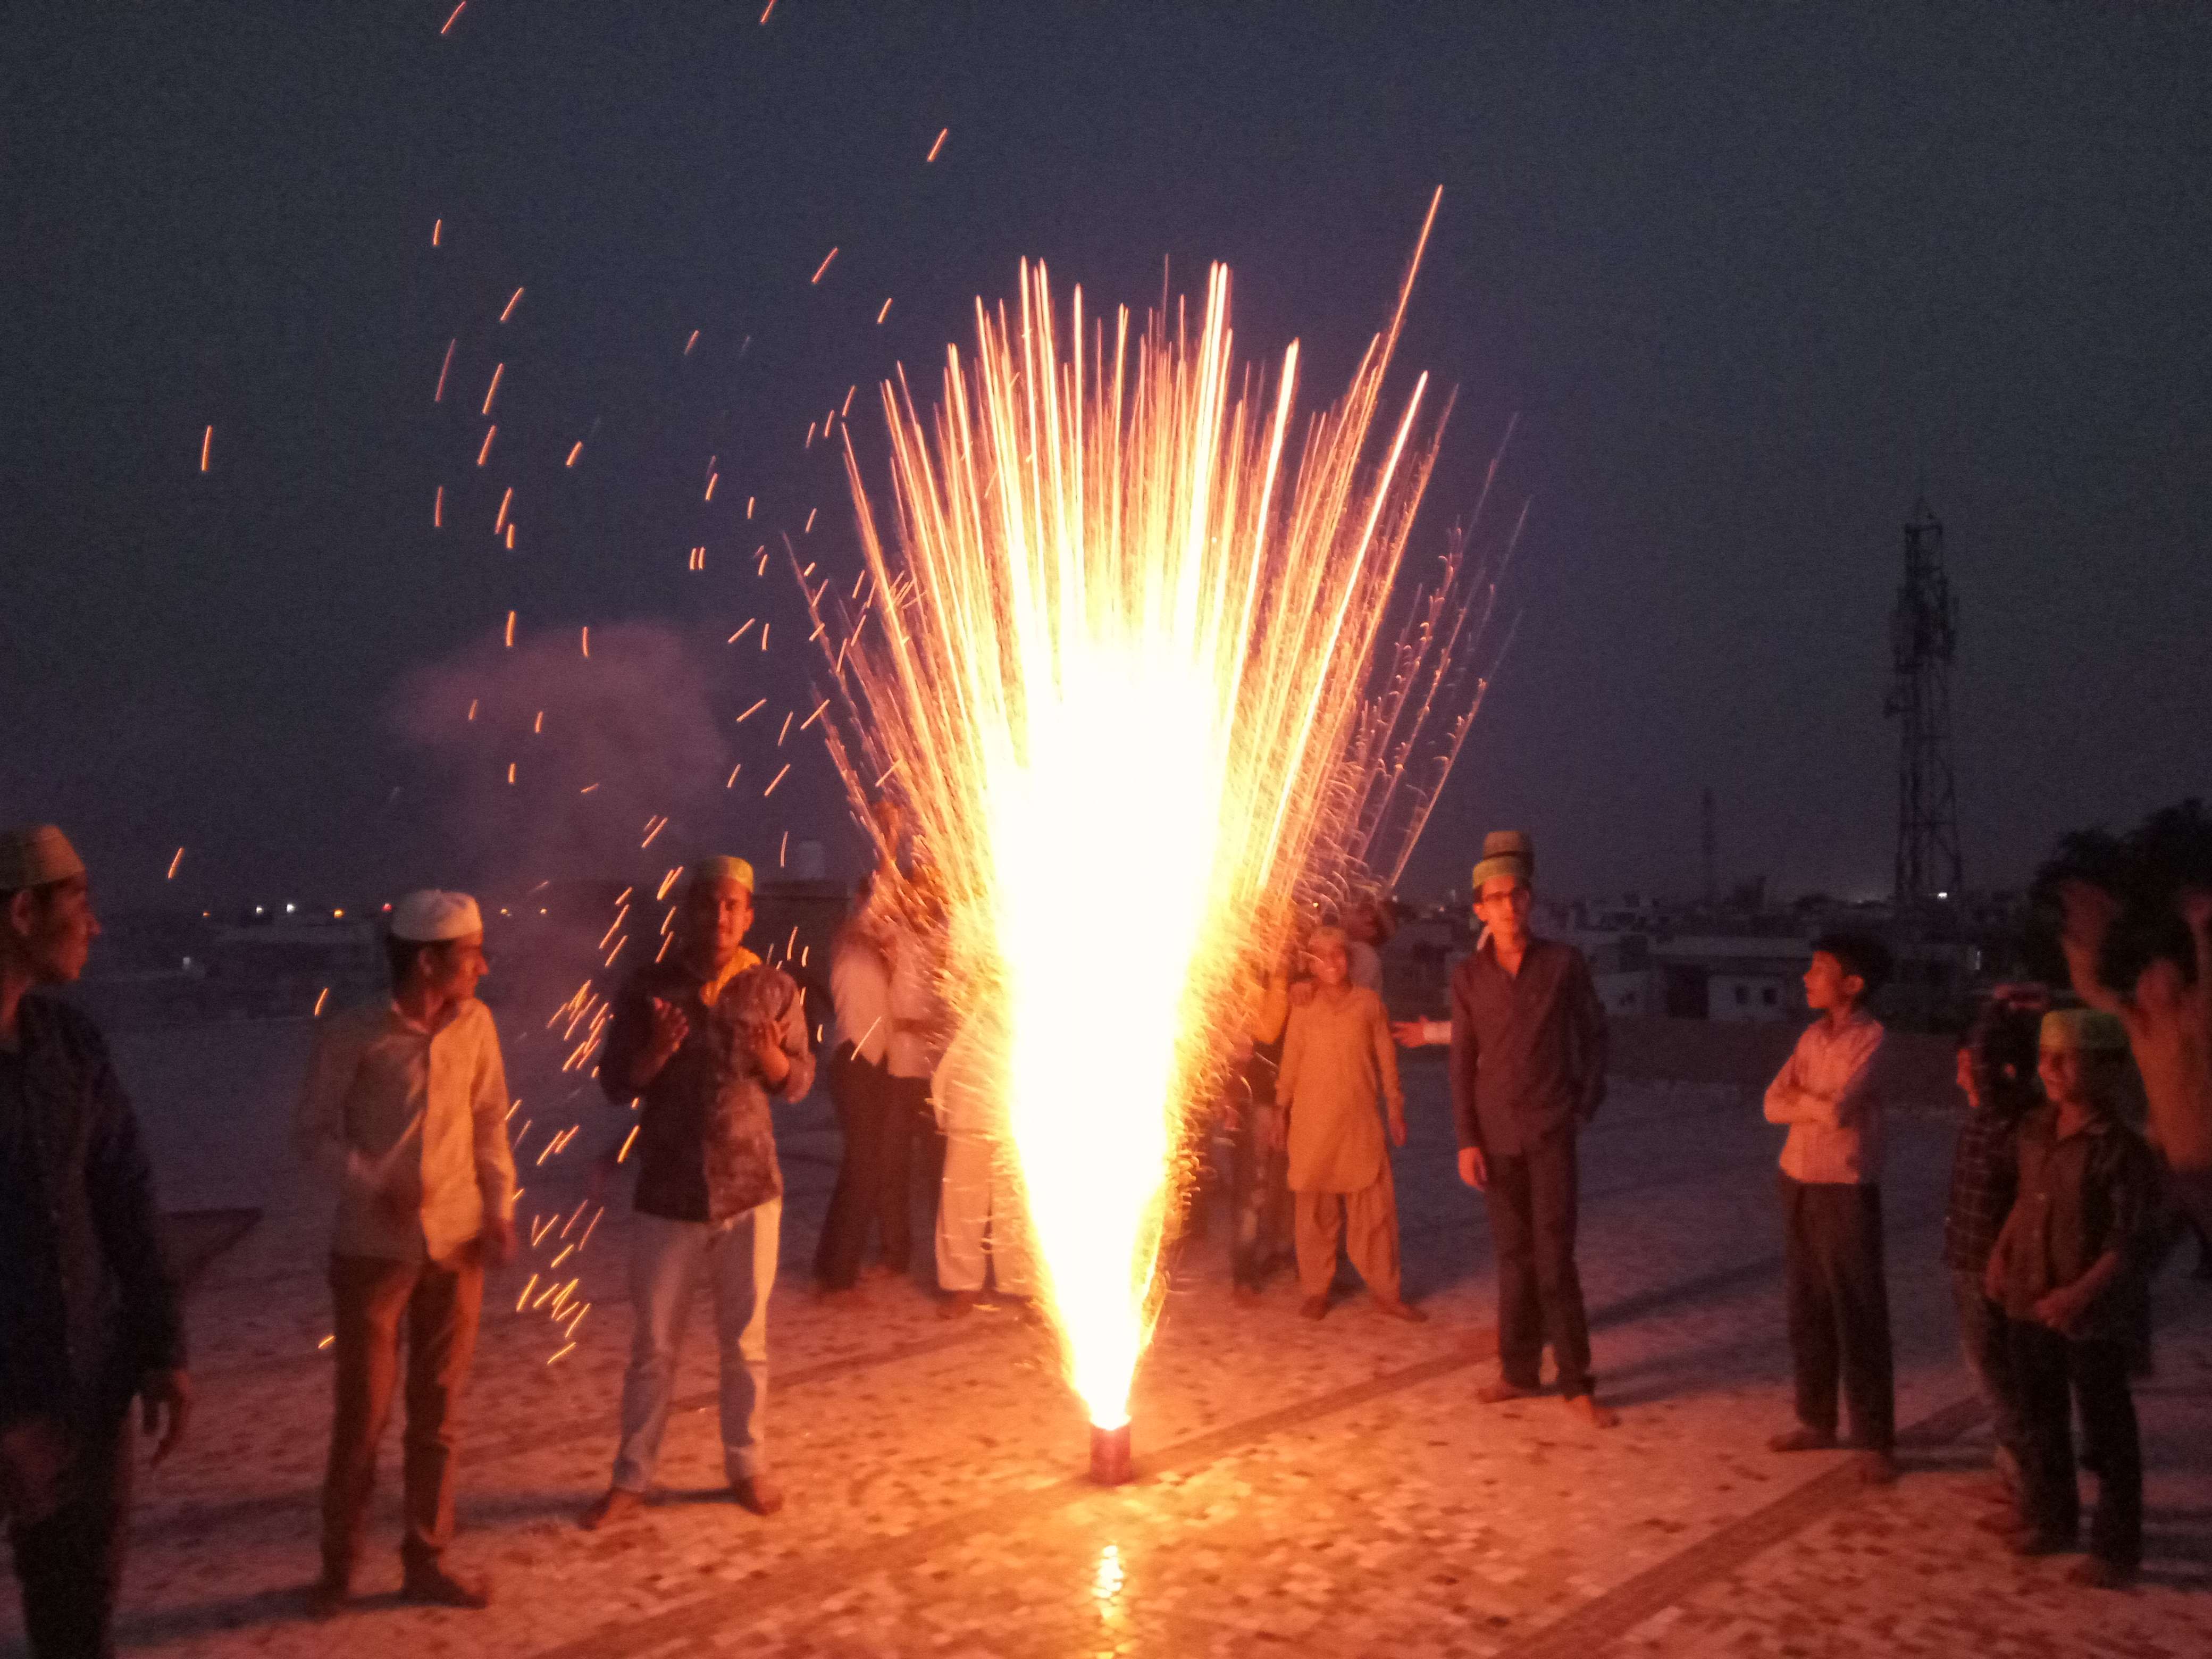 Chand's Deedar, first Rosa today, made a fireworks mahe Ramzan debut